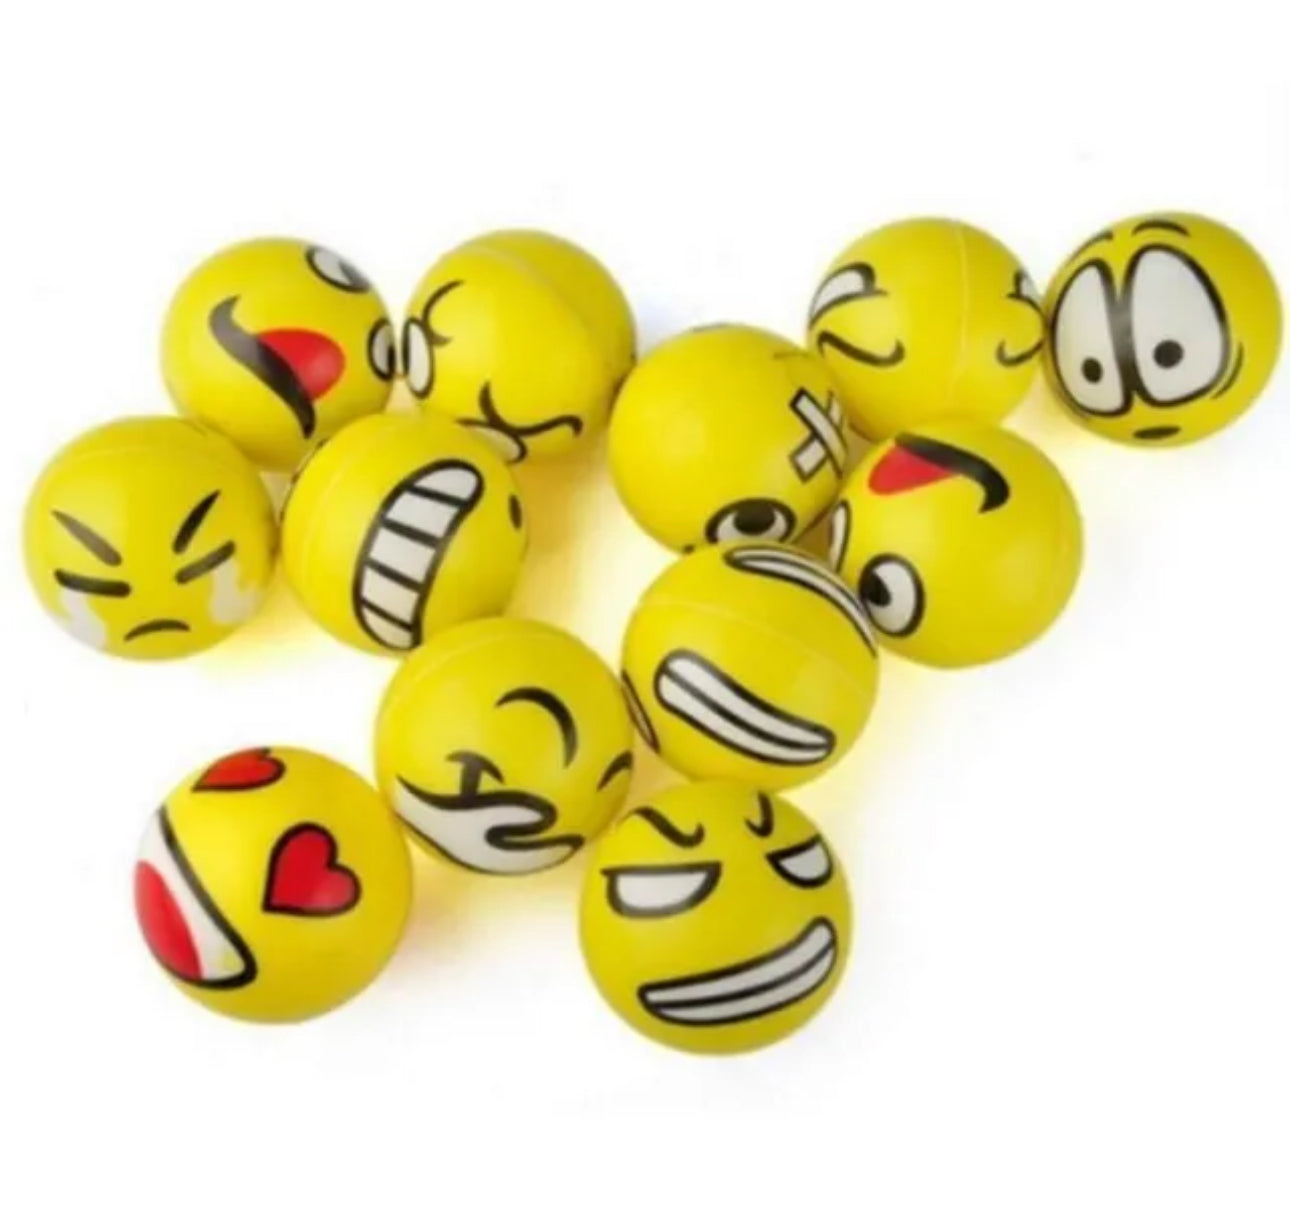 12pcs Emoji Squishy Fidget Toys